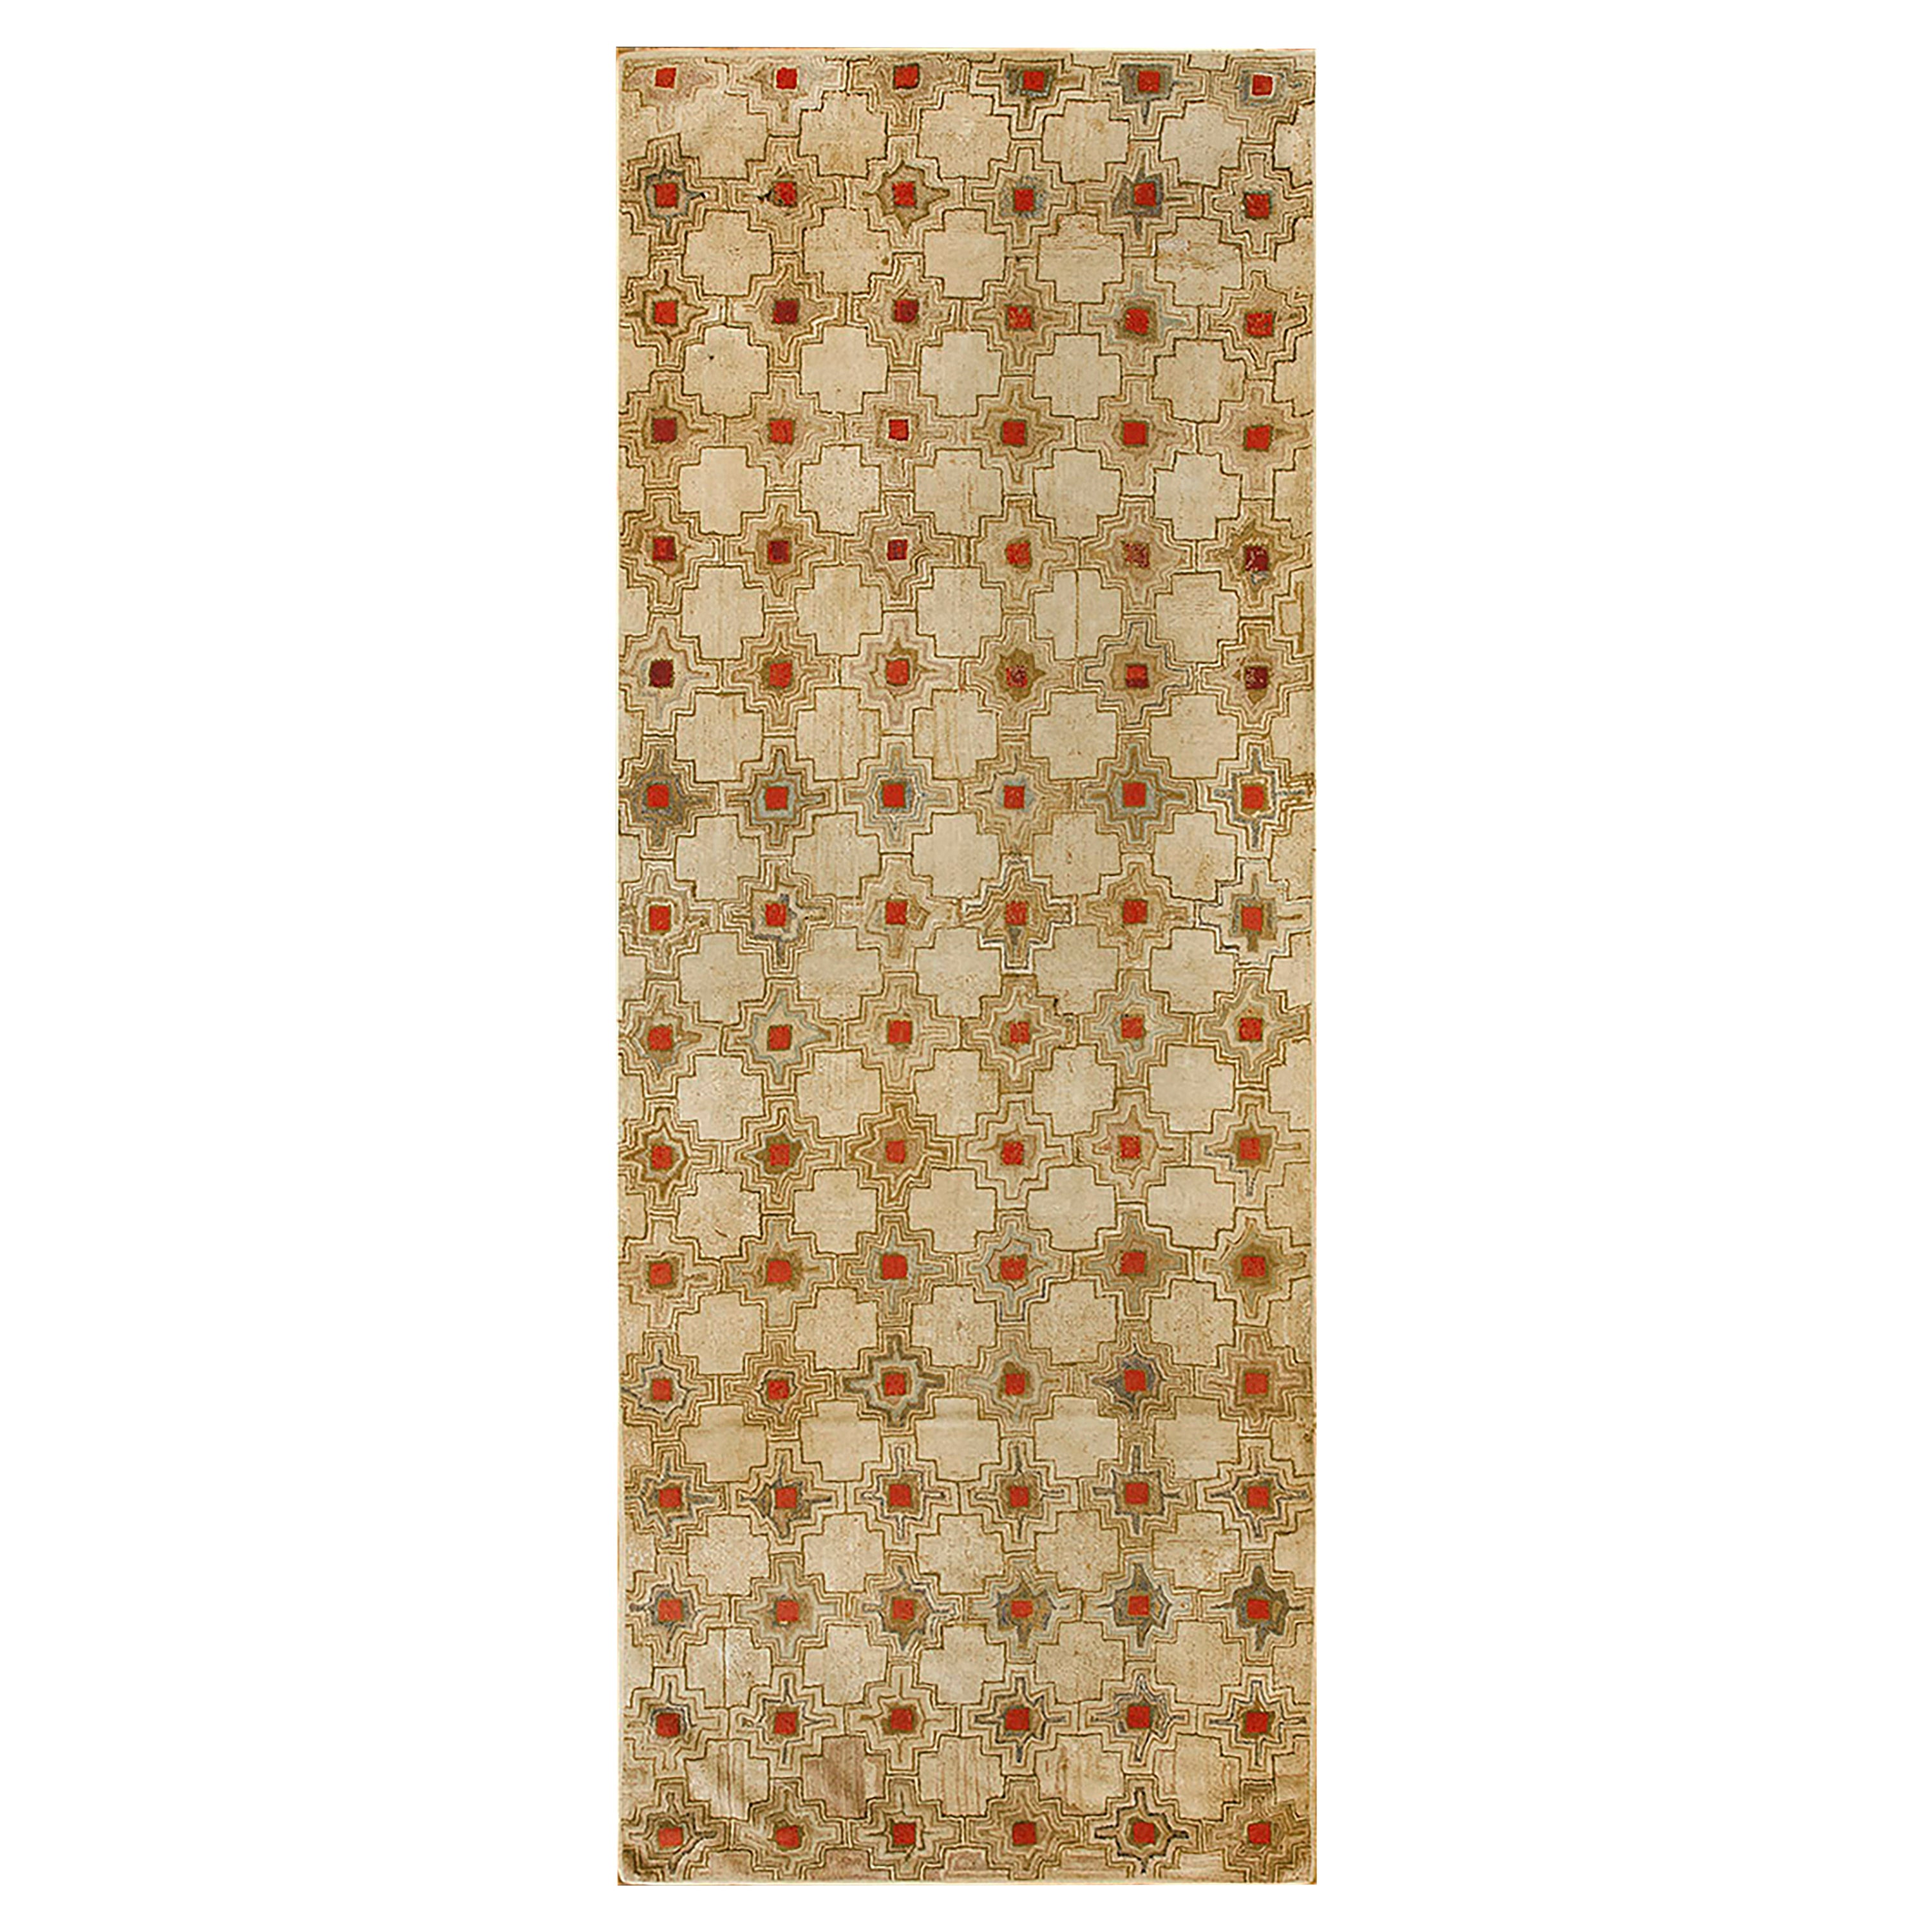 Antiker amerikanischer Kapuzenteppich mit Kapuze  (4' x 10' 10""" - 122 x 330 cm)